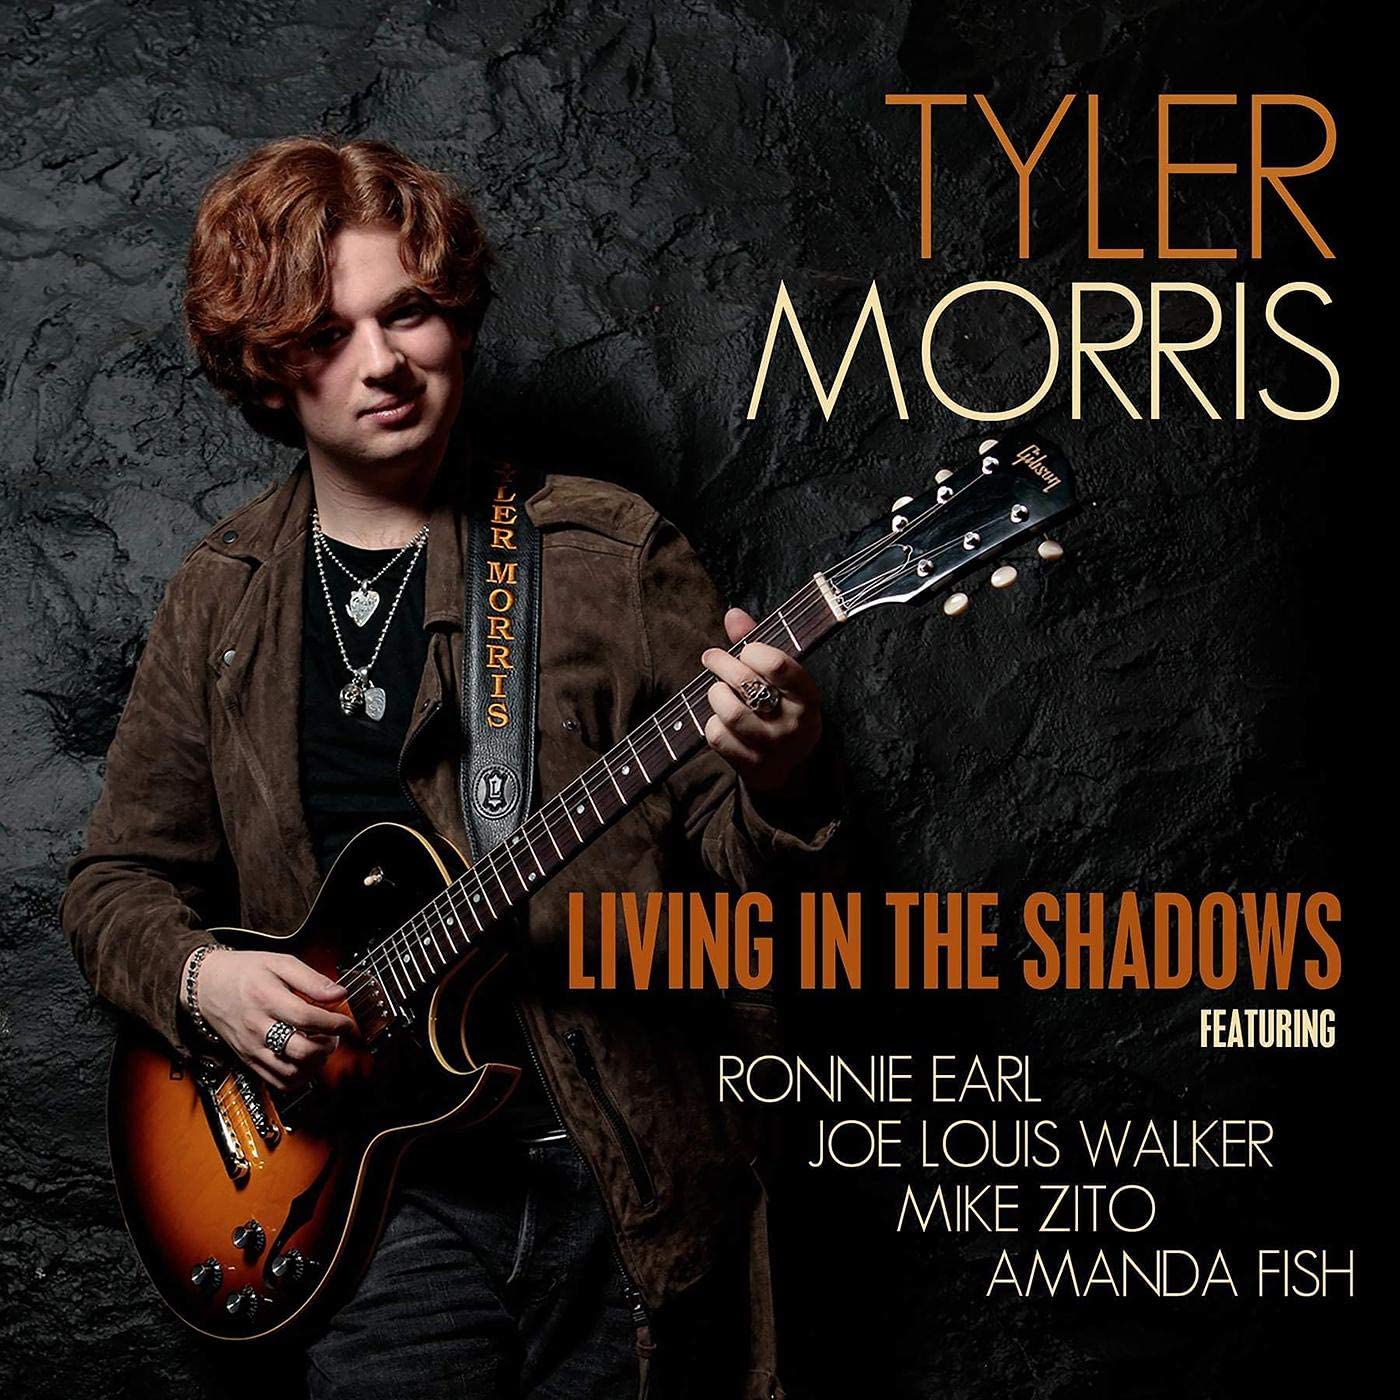 Tyler Morris - Living In The Shadows - CD